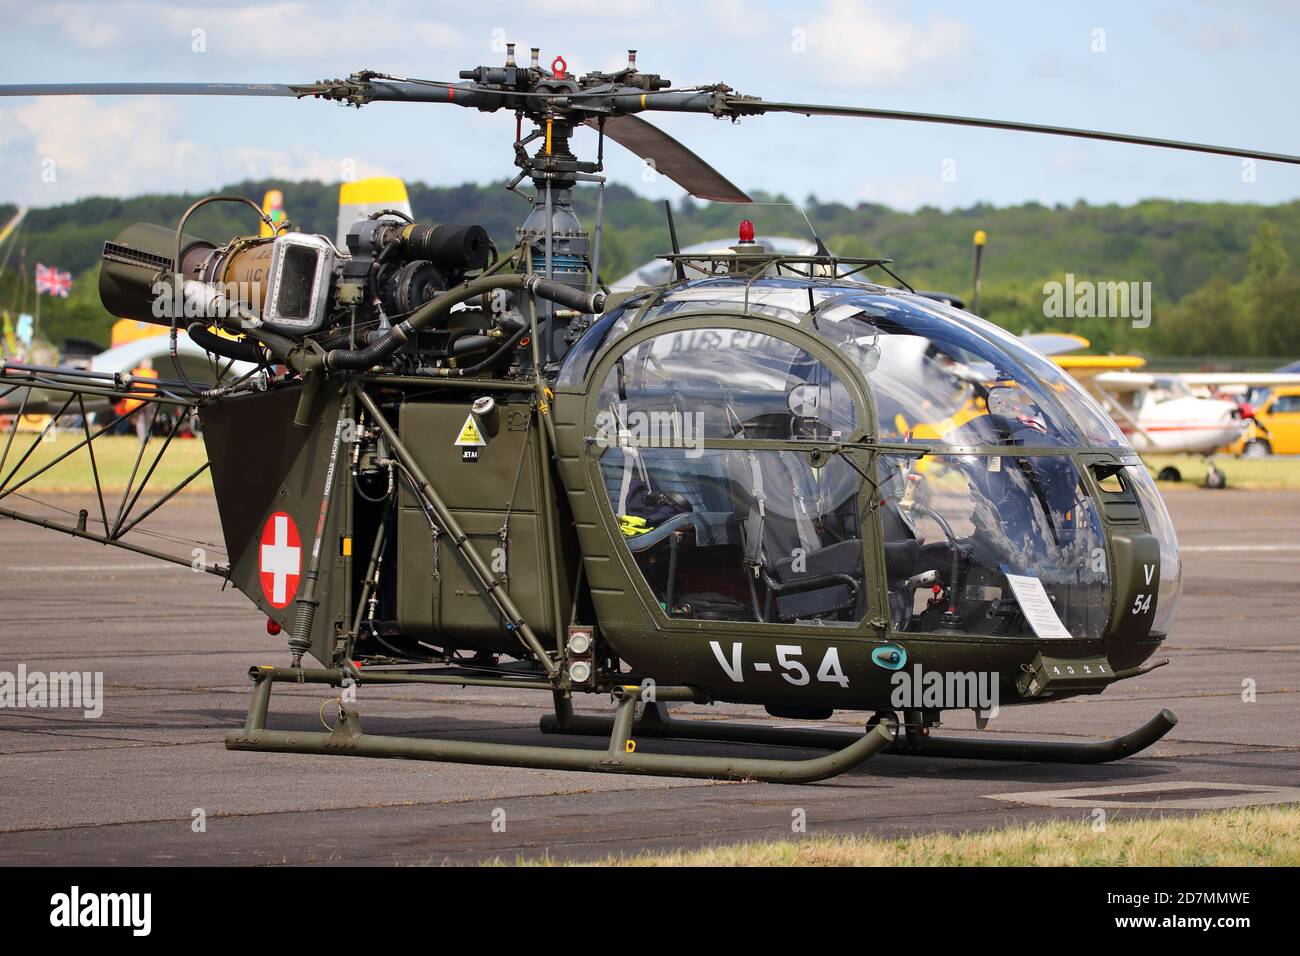 V-54 se.3130 hélicoptère Alouette G-BVSD à l'Abingdon Air & Country Show 2017, Royaume-Uni Banque D'Images